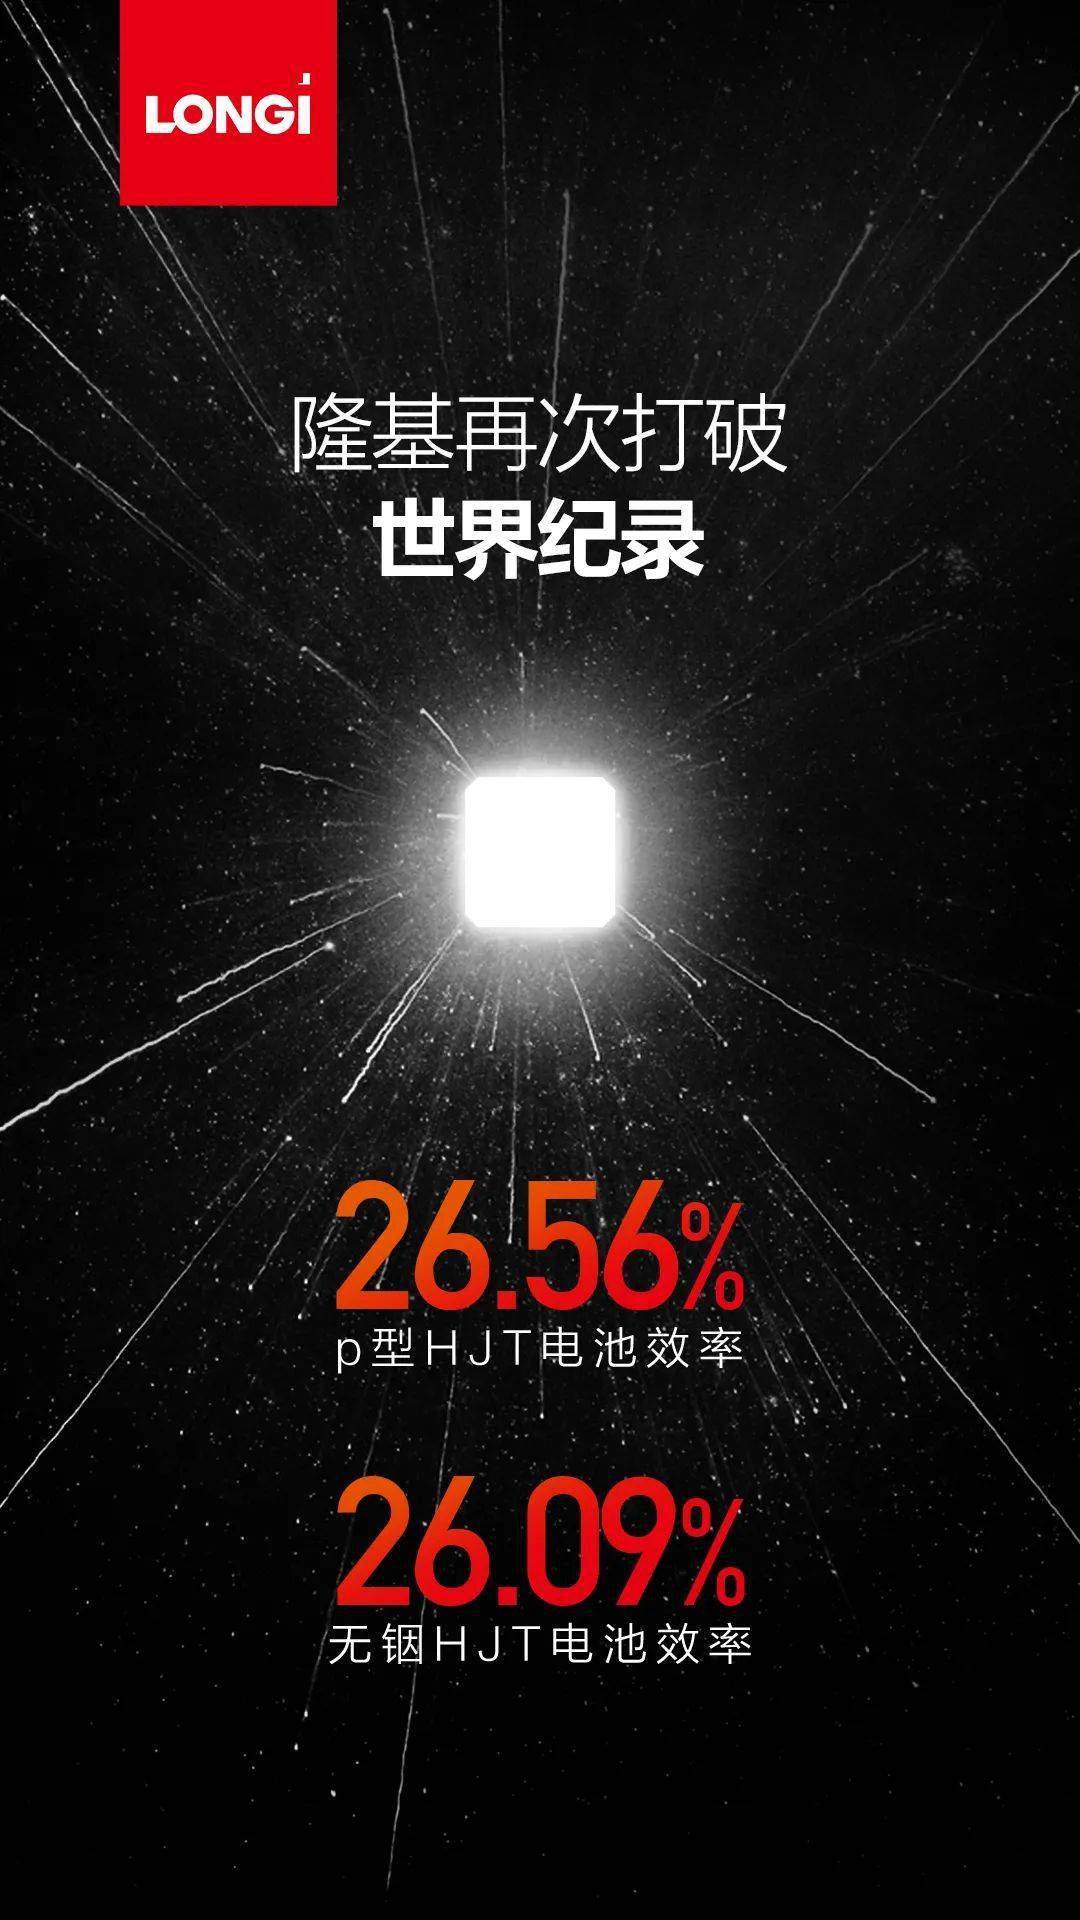 华为p五手机图片
:26.56%！26.09%！隆基p型及无铟HJT电池效率再获突破